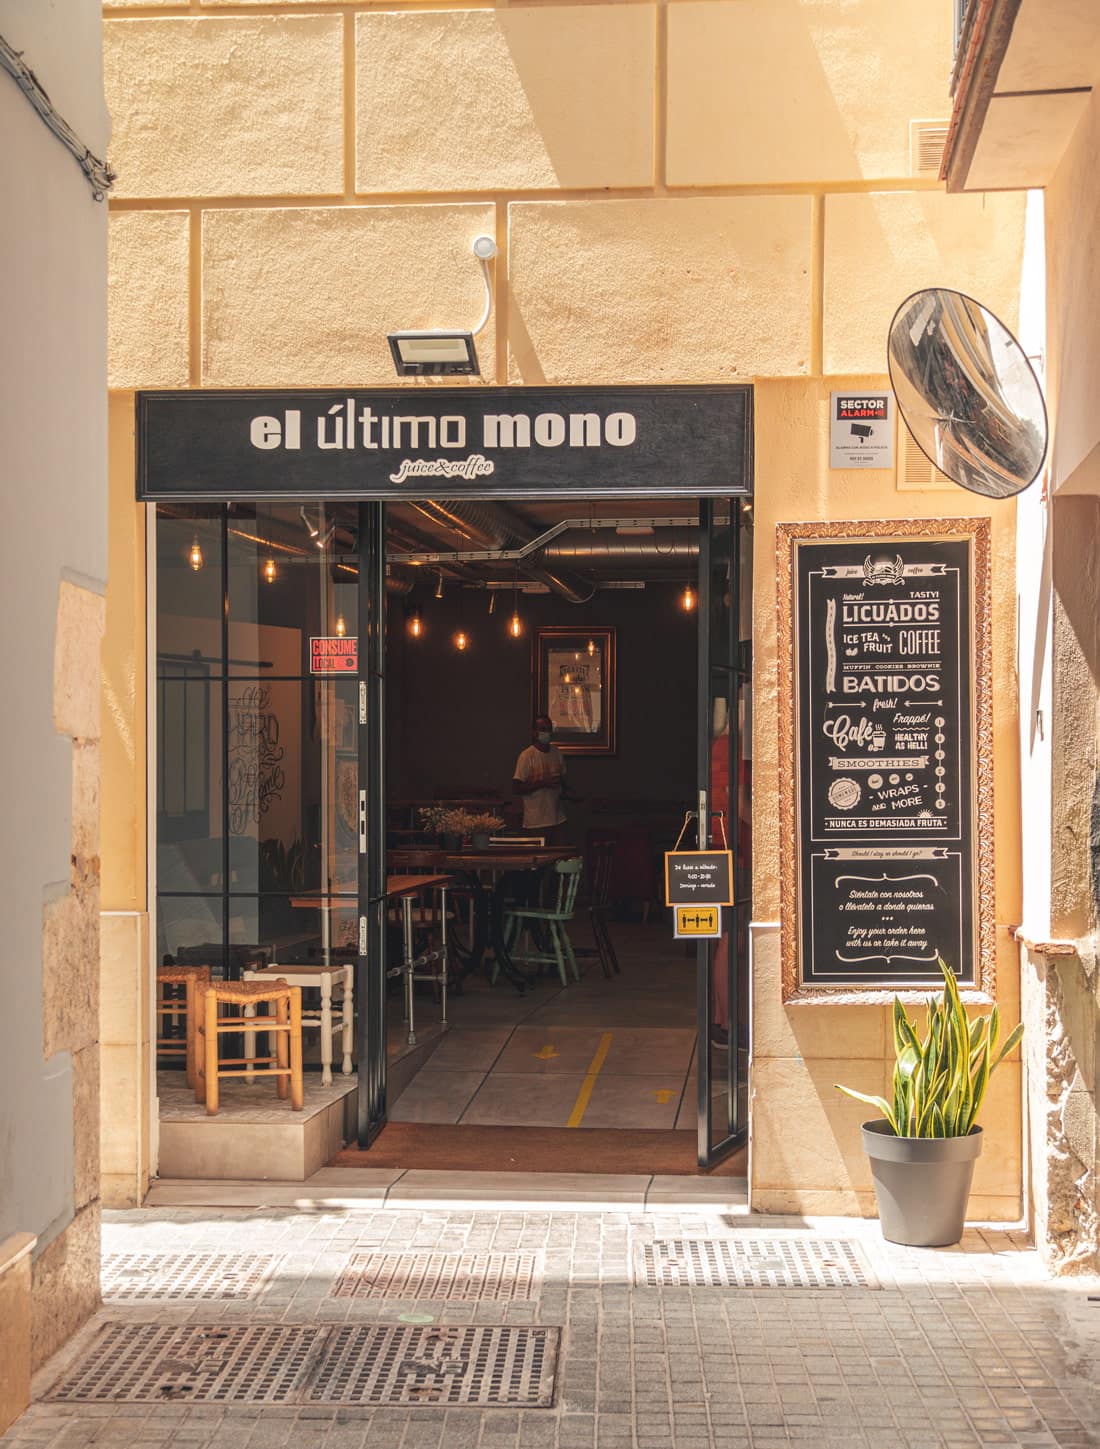 Coffee place in Malaga